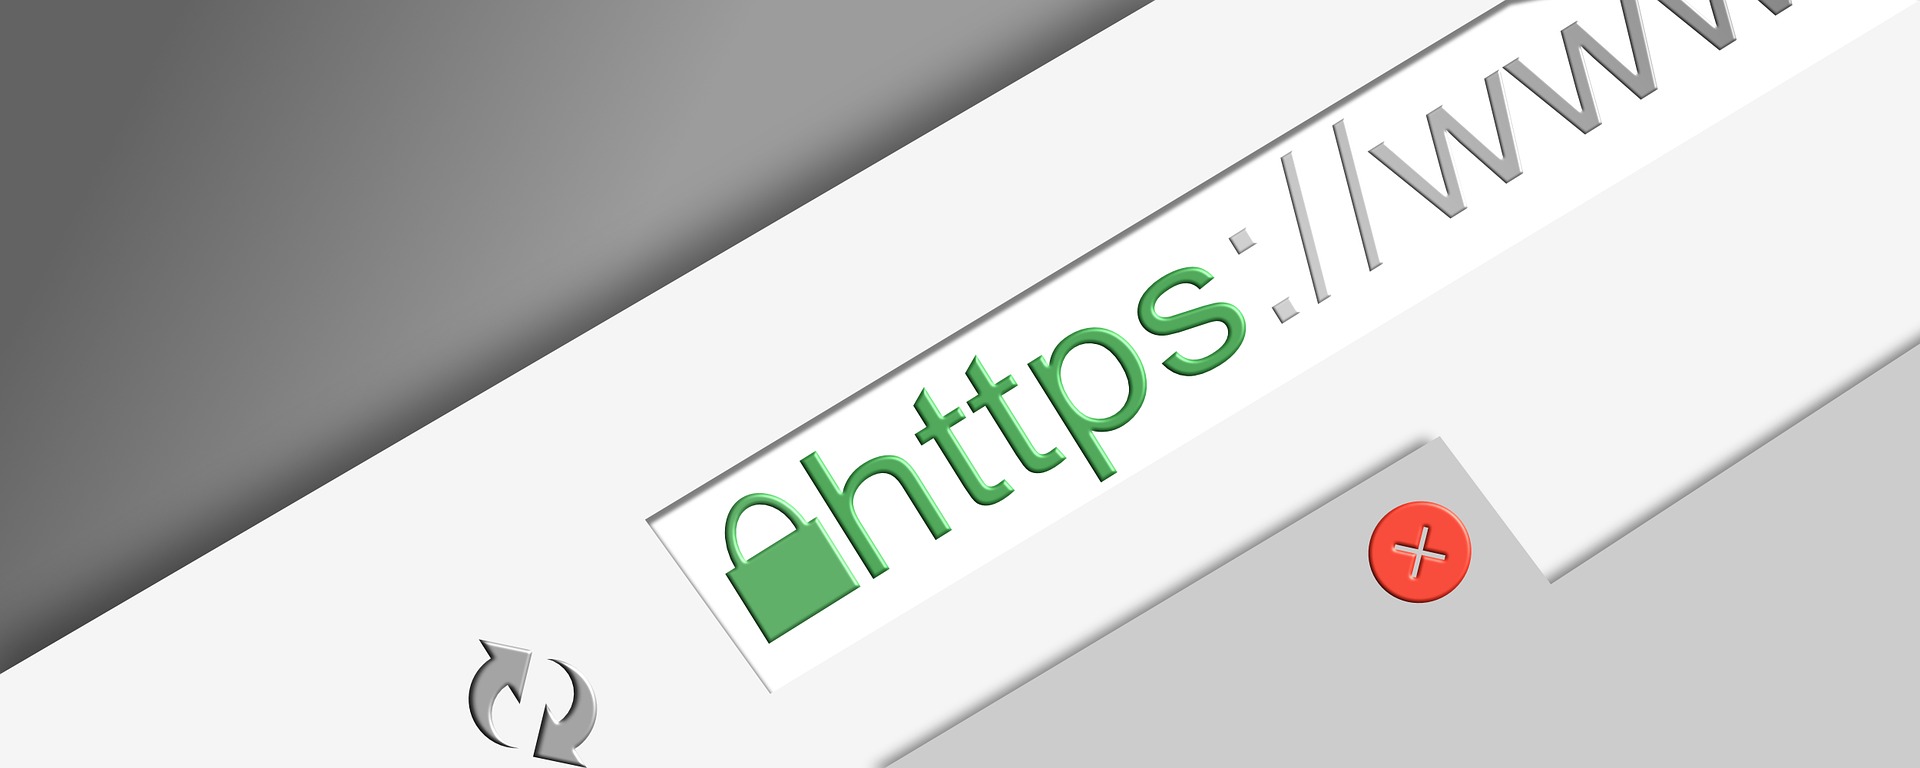 HTTPS: Cifrado en la web